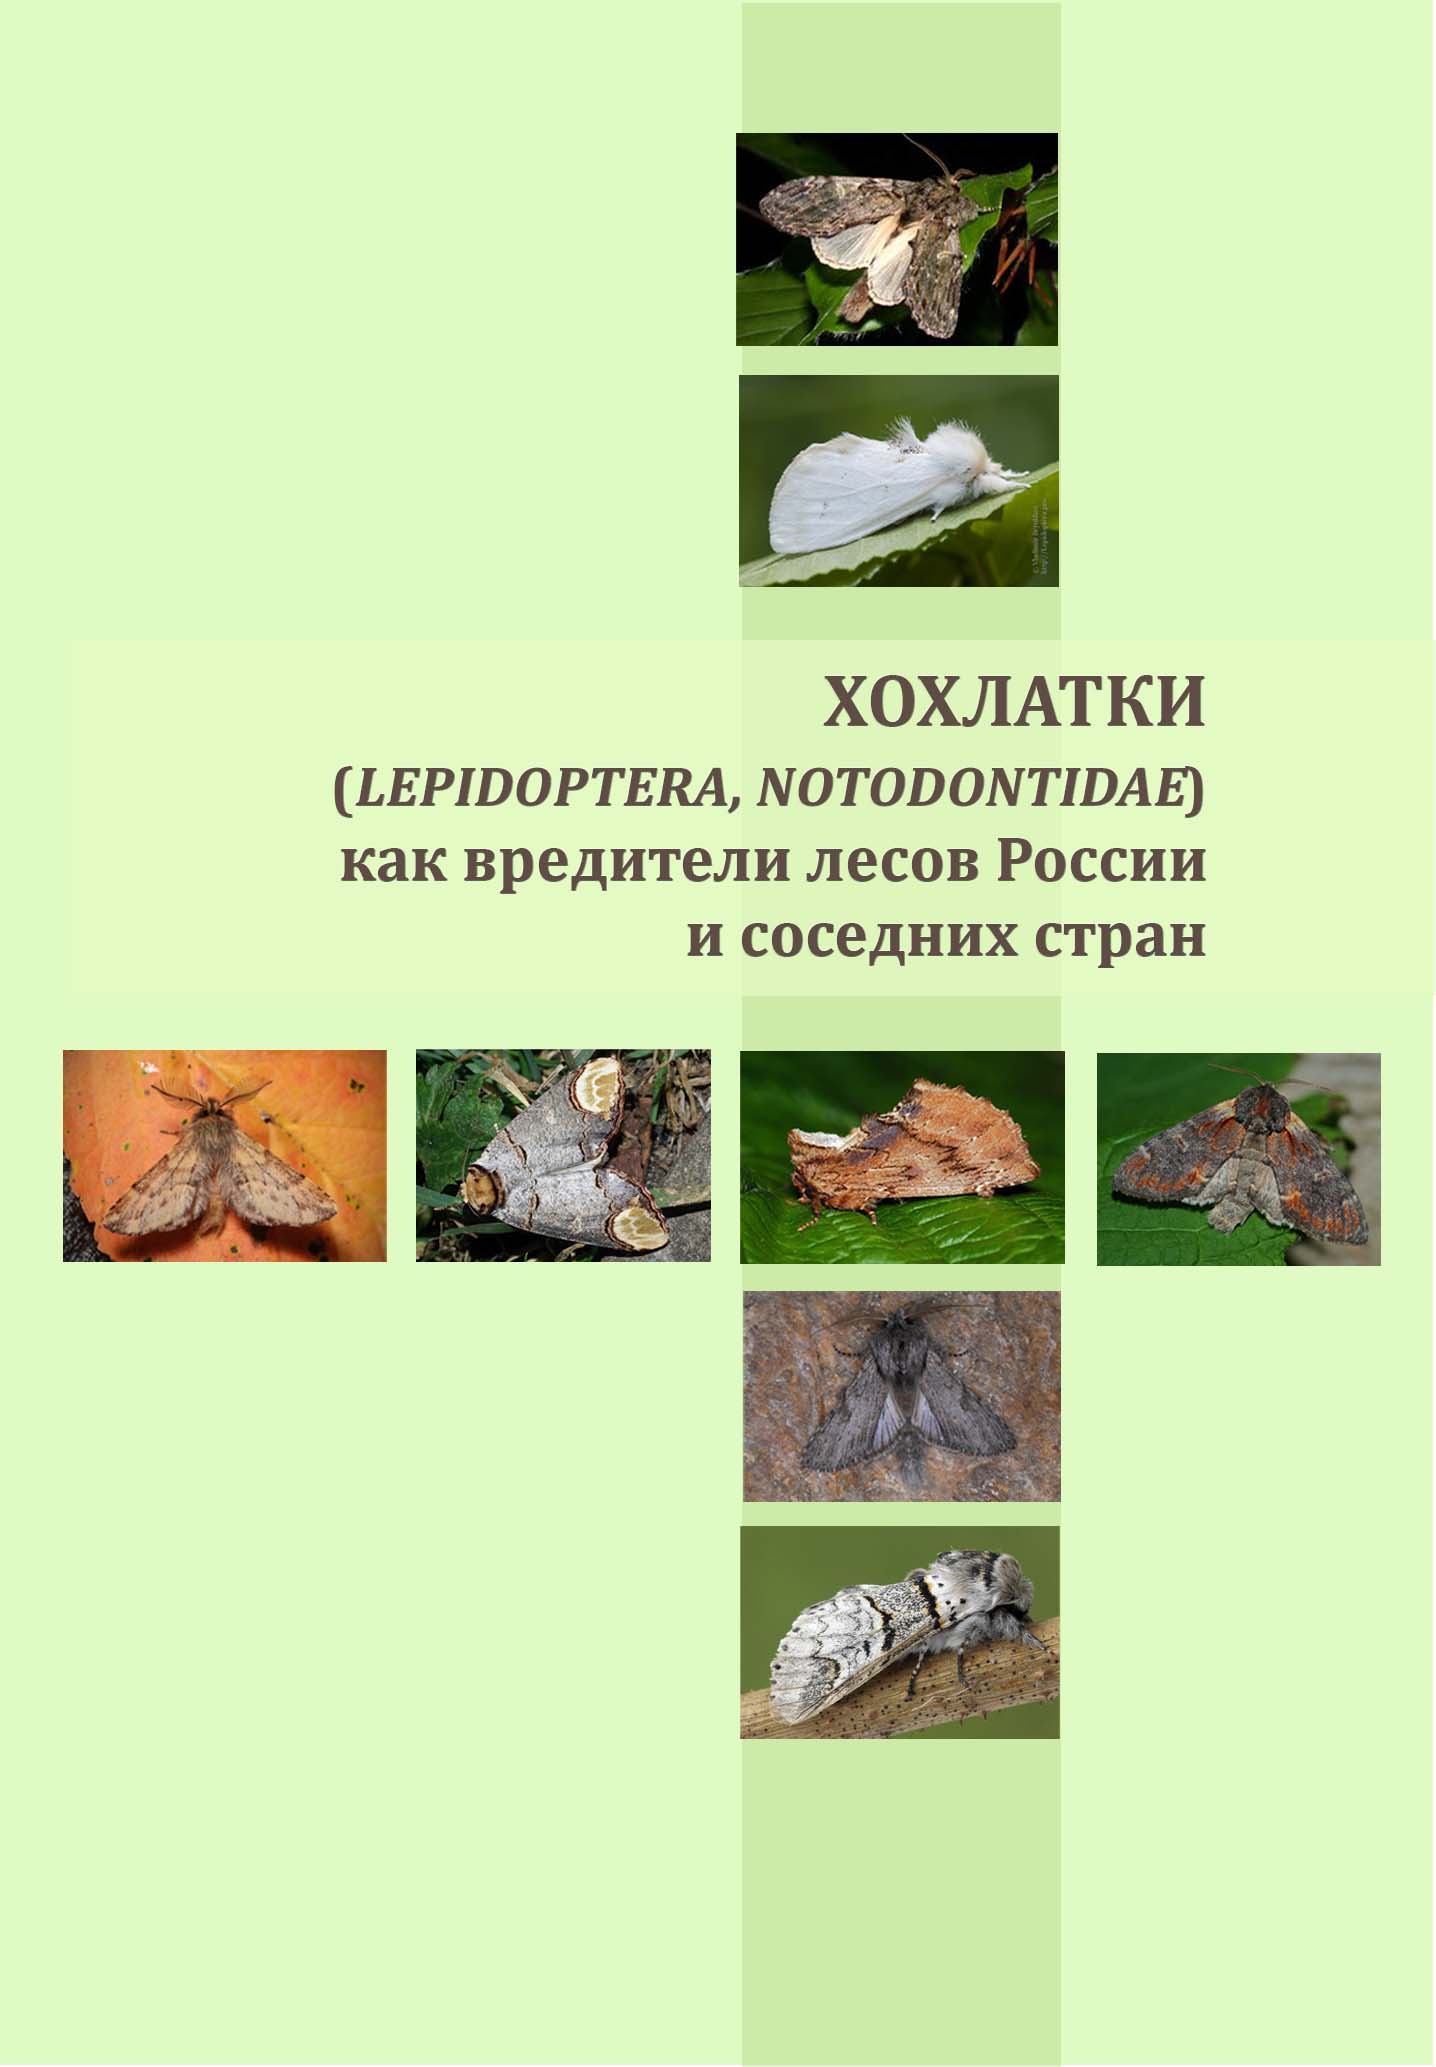 Хохлатки (Lepidoptera, Notodontidae) как вредители лесов России и соседних стран